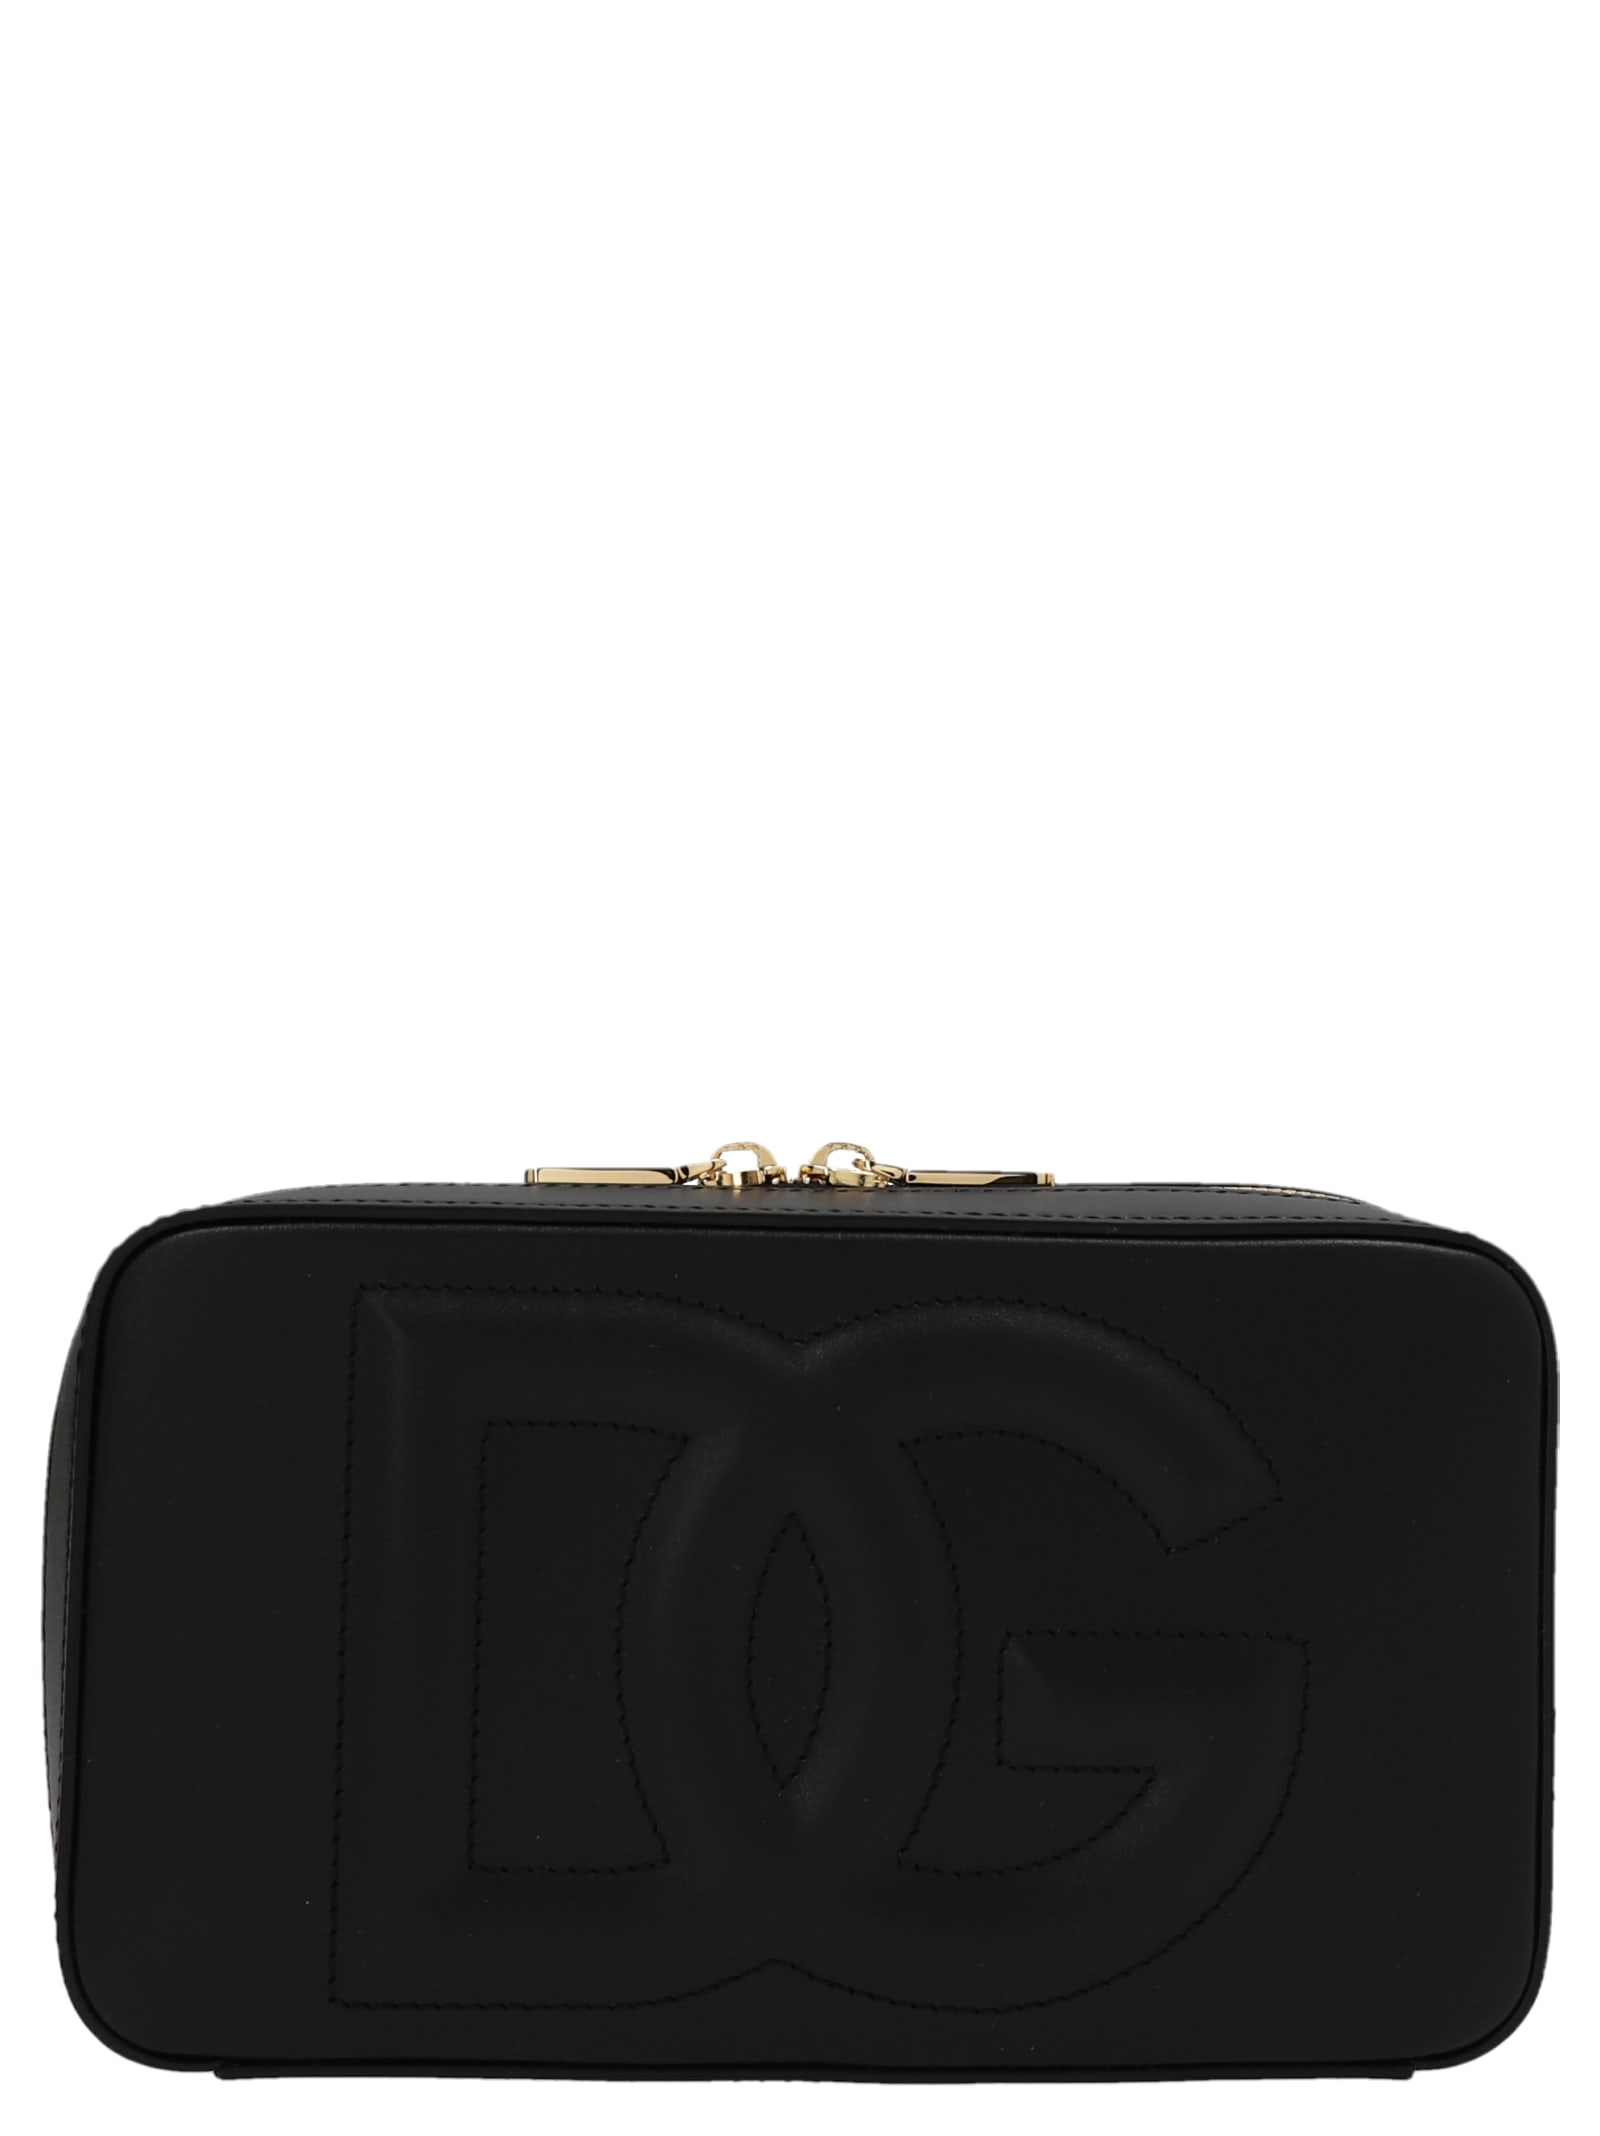 Dolce & Gabbana Logo Crossbody Bag